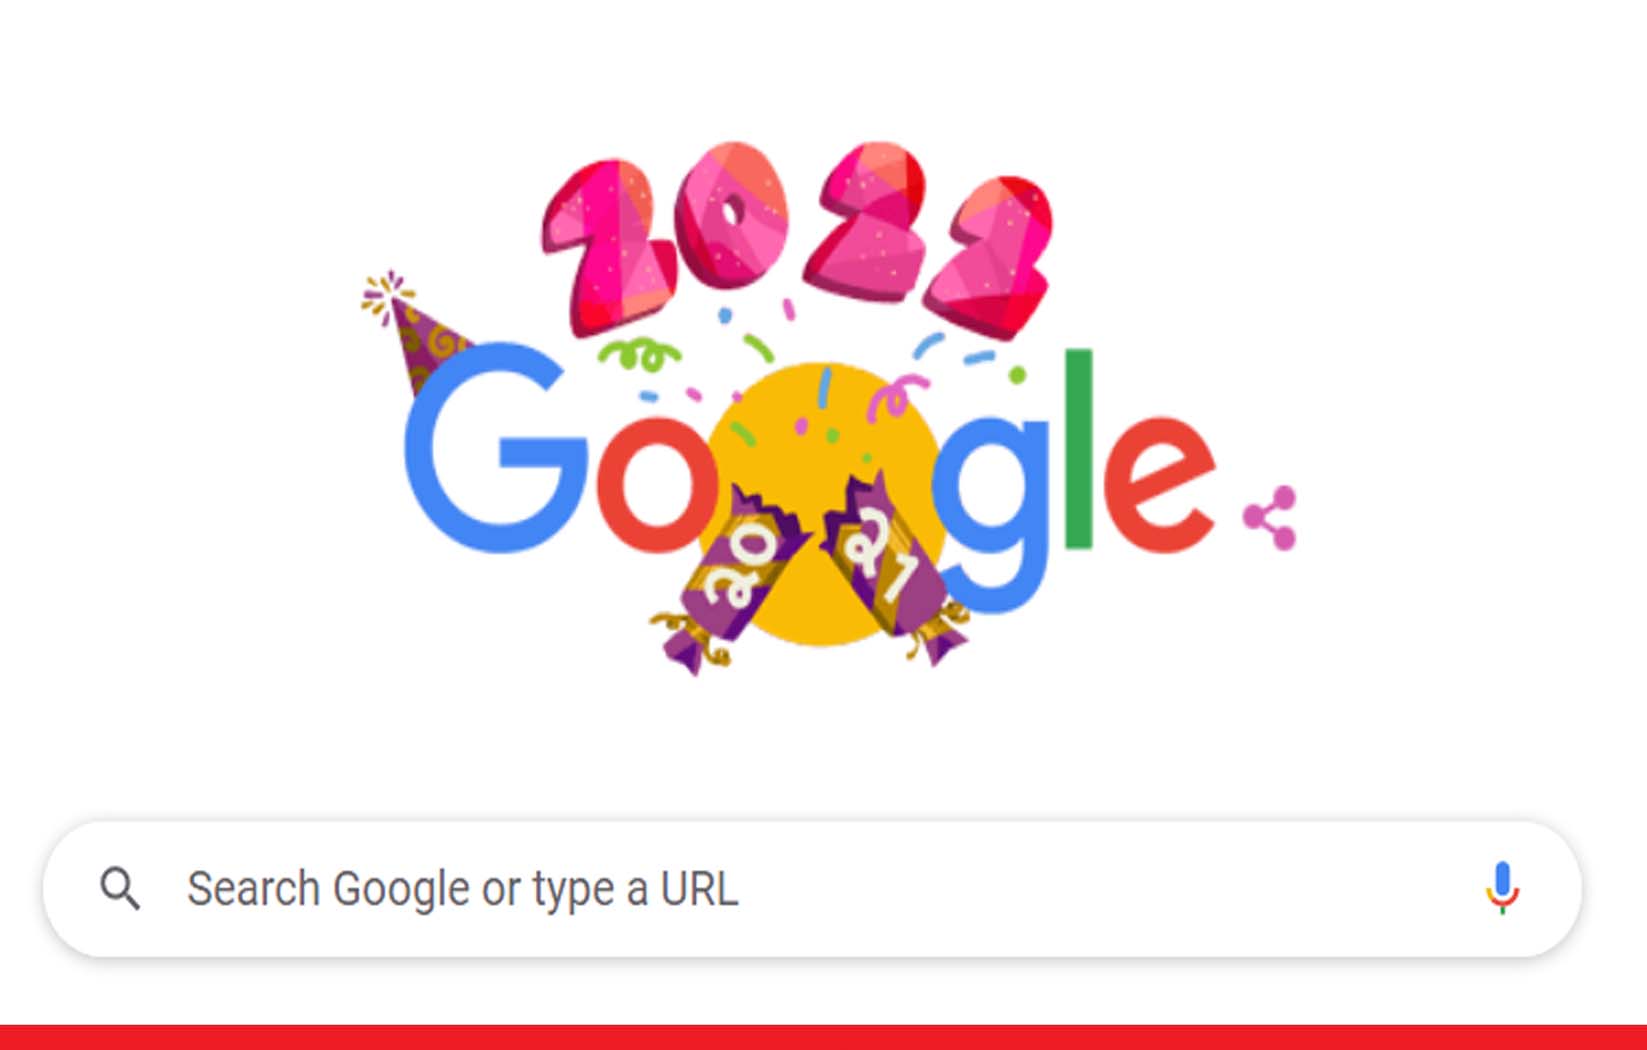 नए साल के पहले दिन गूगल ने बनाया शानदार डूडल